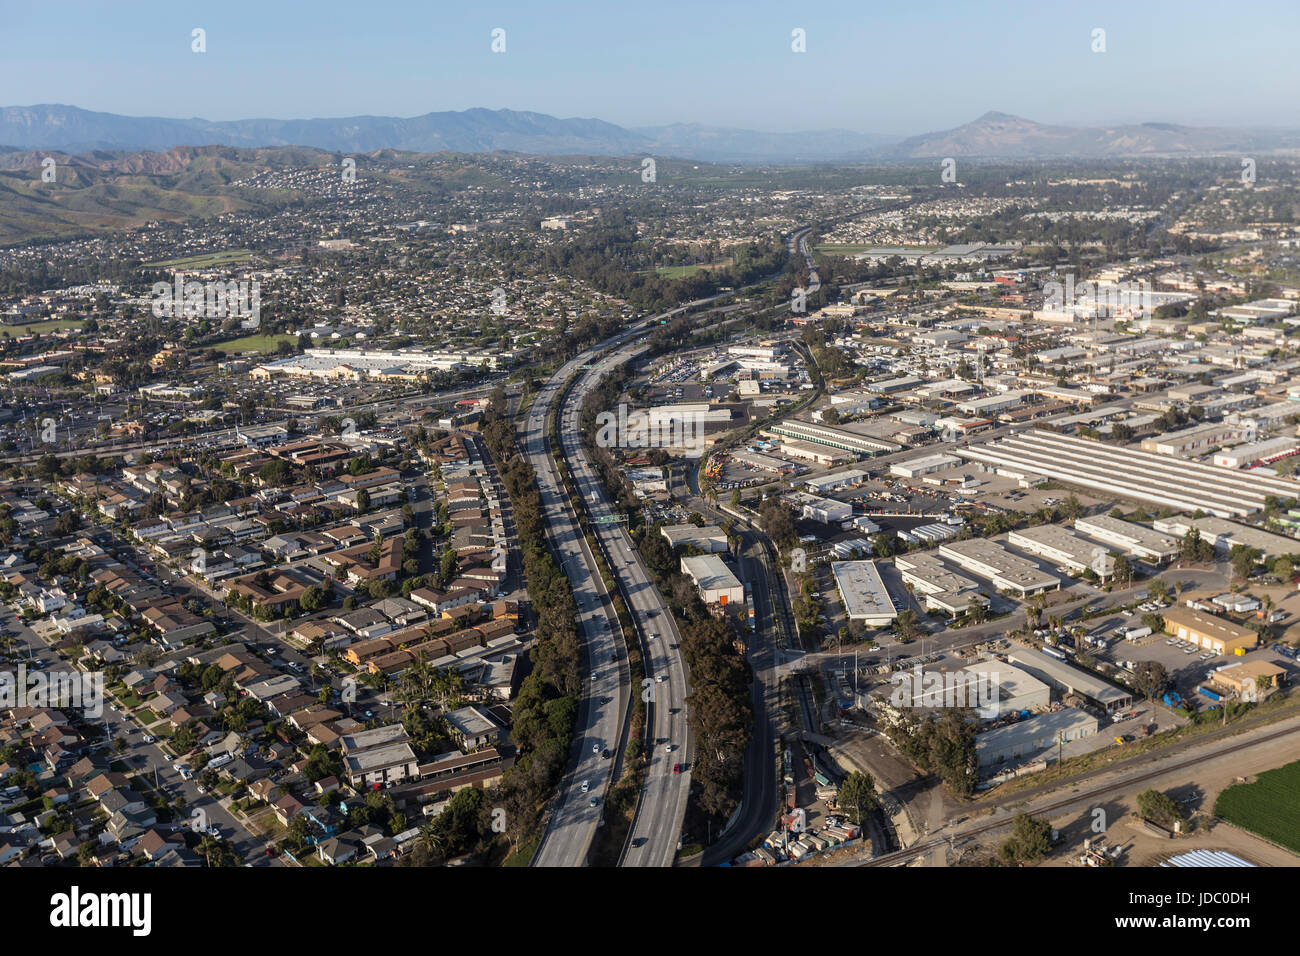 Luftaufnahme des 101 Freeway in Ventura, Kalifornien. Stockfoto